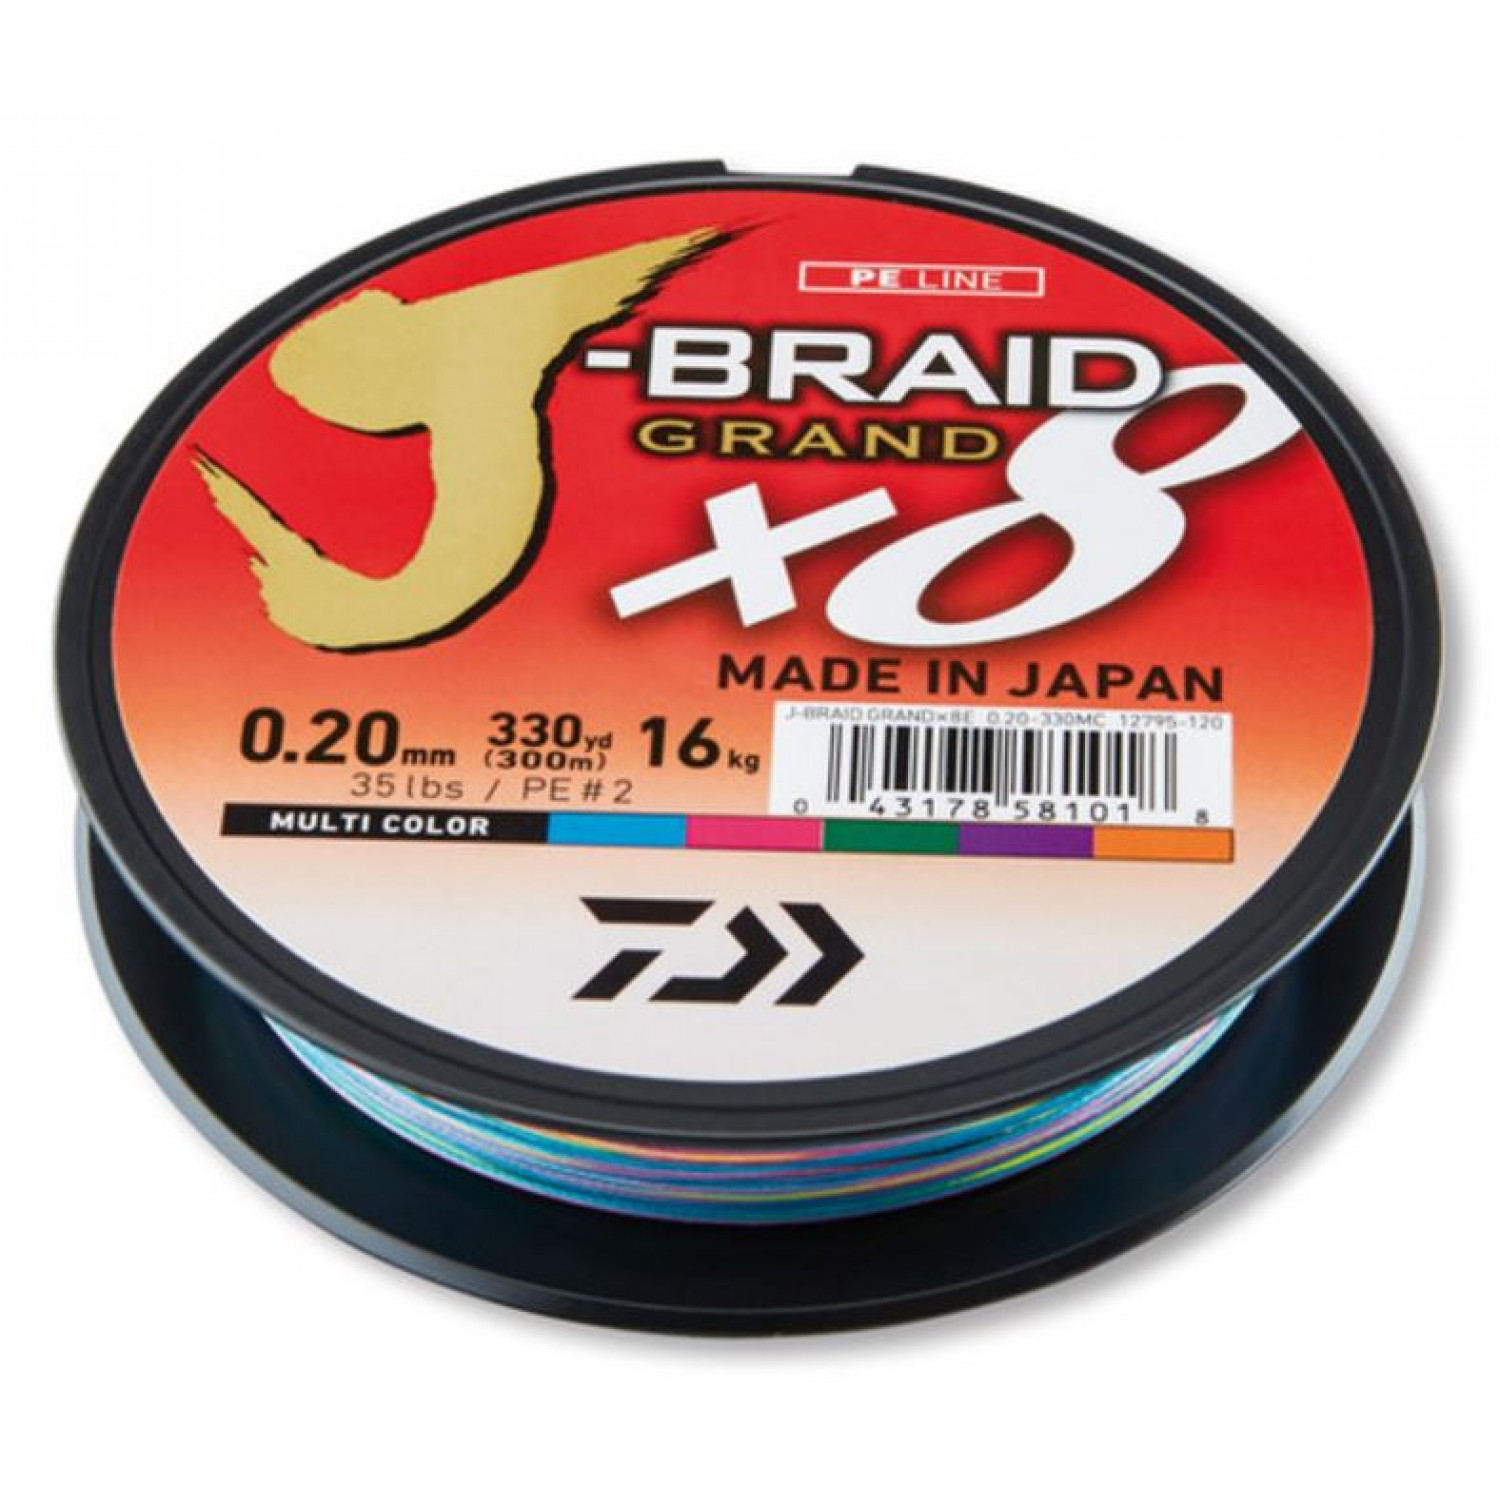 Daiwa J Braid Grand 8 Braid, 150 meter, light grey, braided fishing line